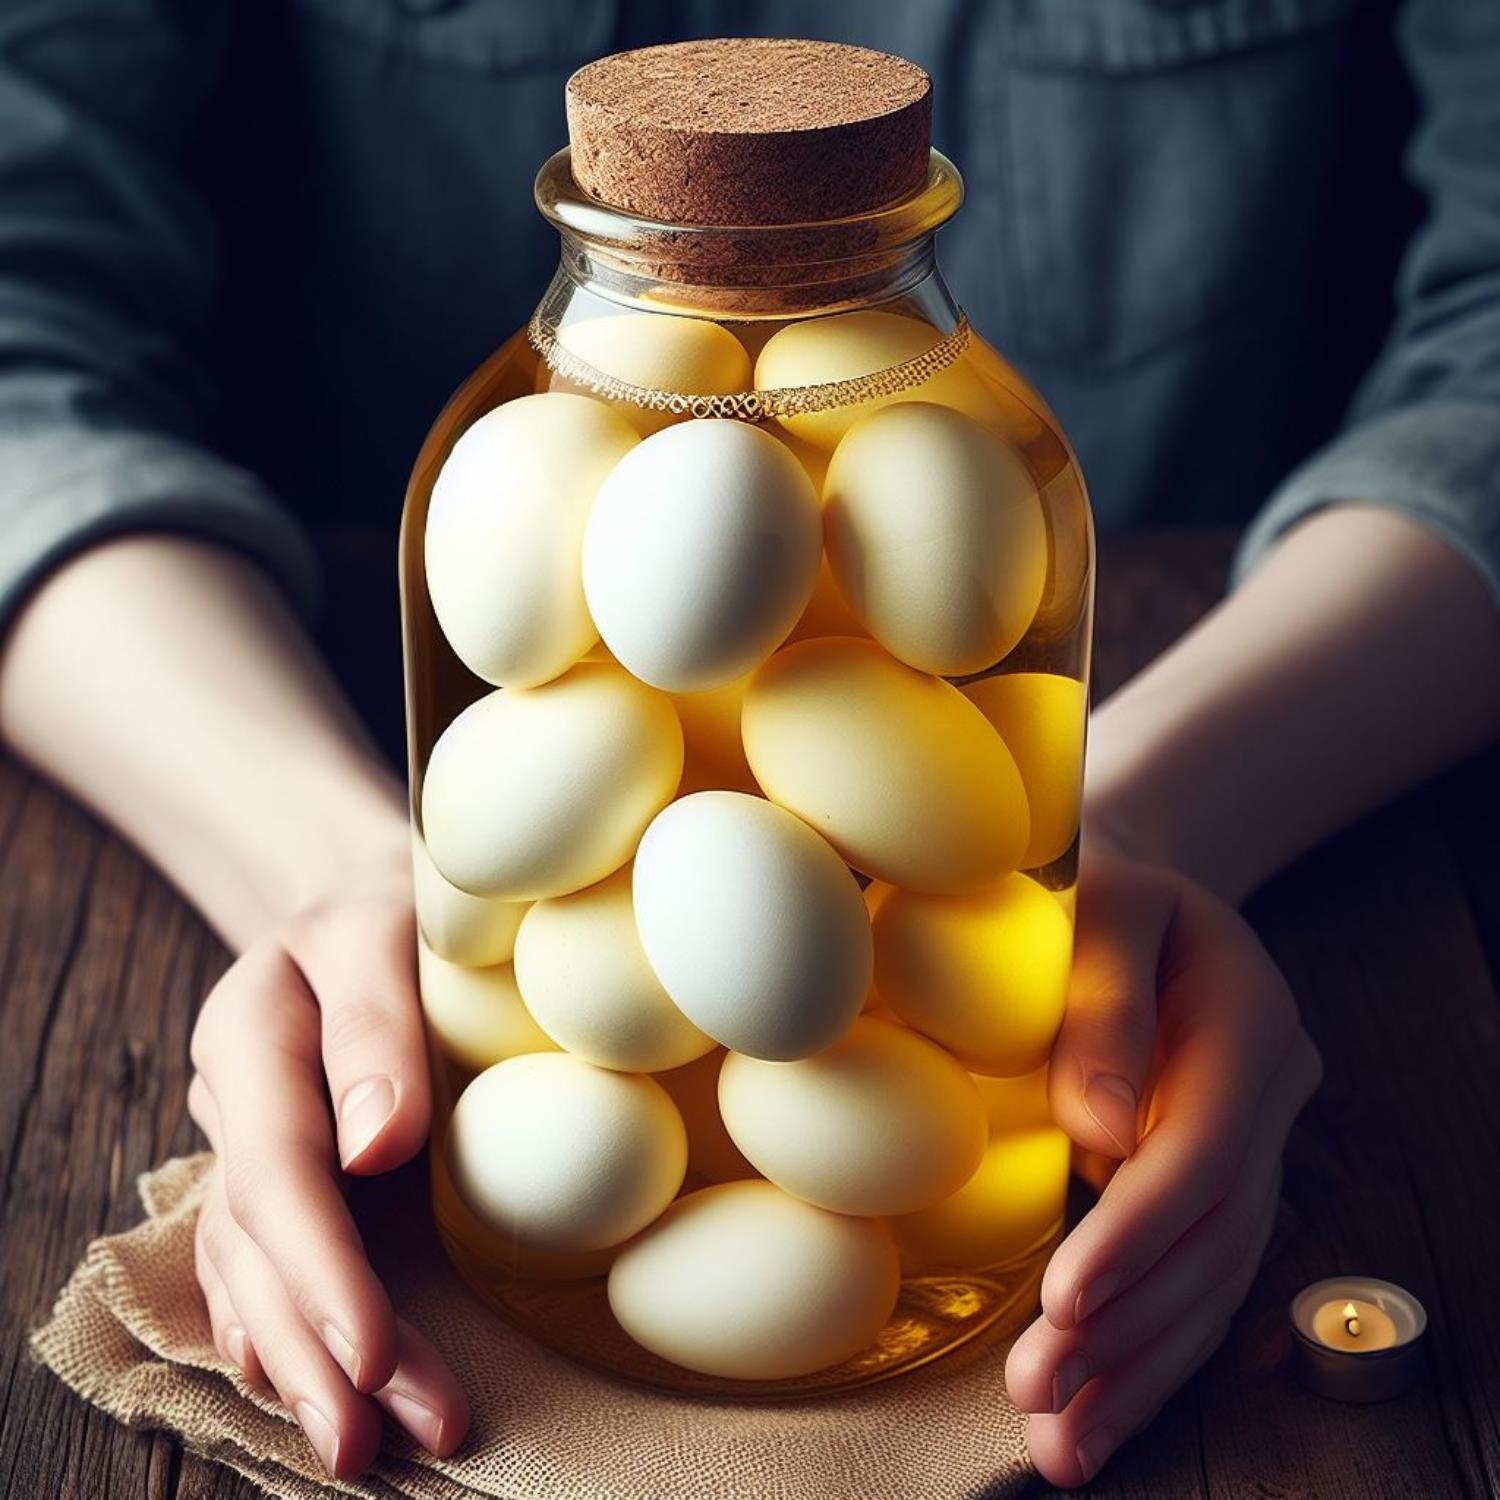 醋蛋可以放多久,醋蛋做法,醋蛋